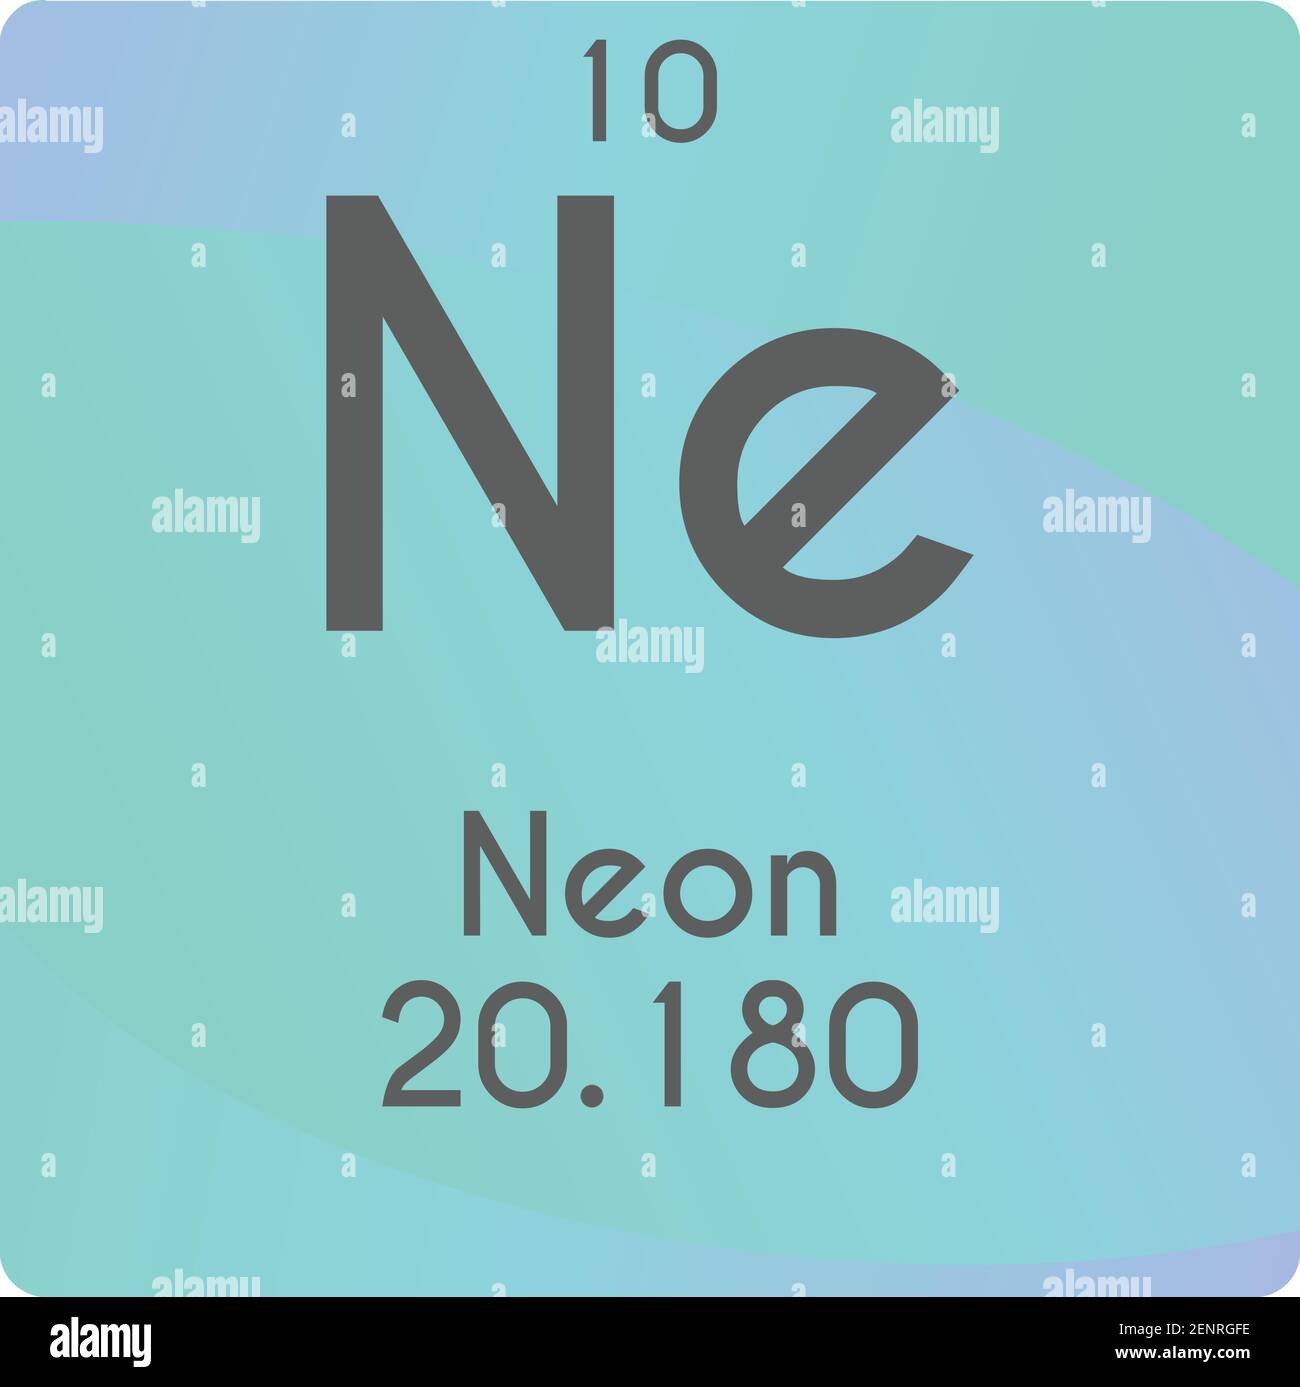 Ne Neon Noble gas Schema di illustrazione vettoriale dell'elemento chimico, con numero atomico e massa. Design piatto a gradiente semplice per l'istruzione, il laboratorio e la scienza Illustrazione Vettoriale